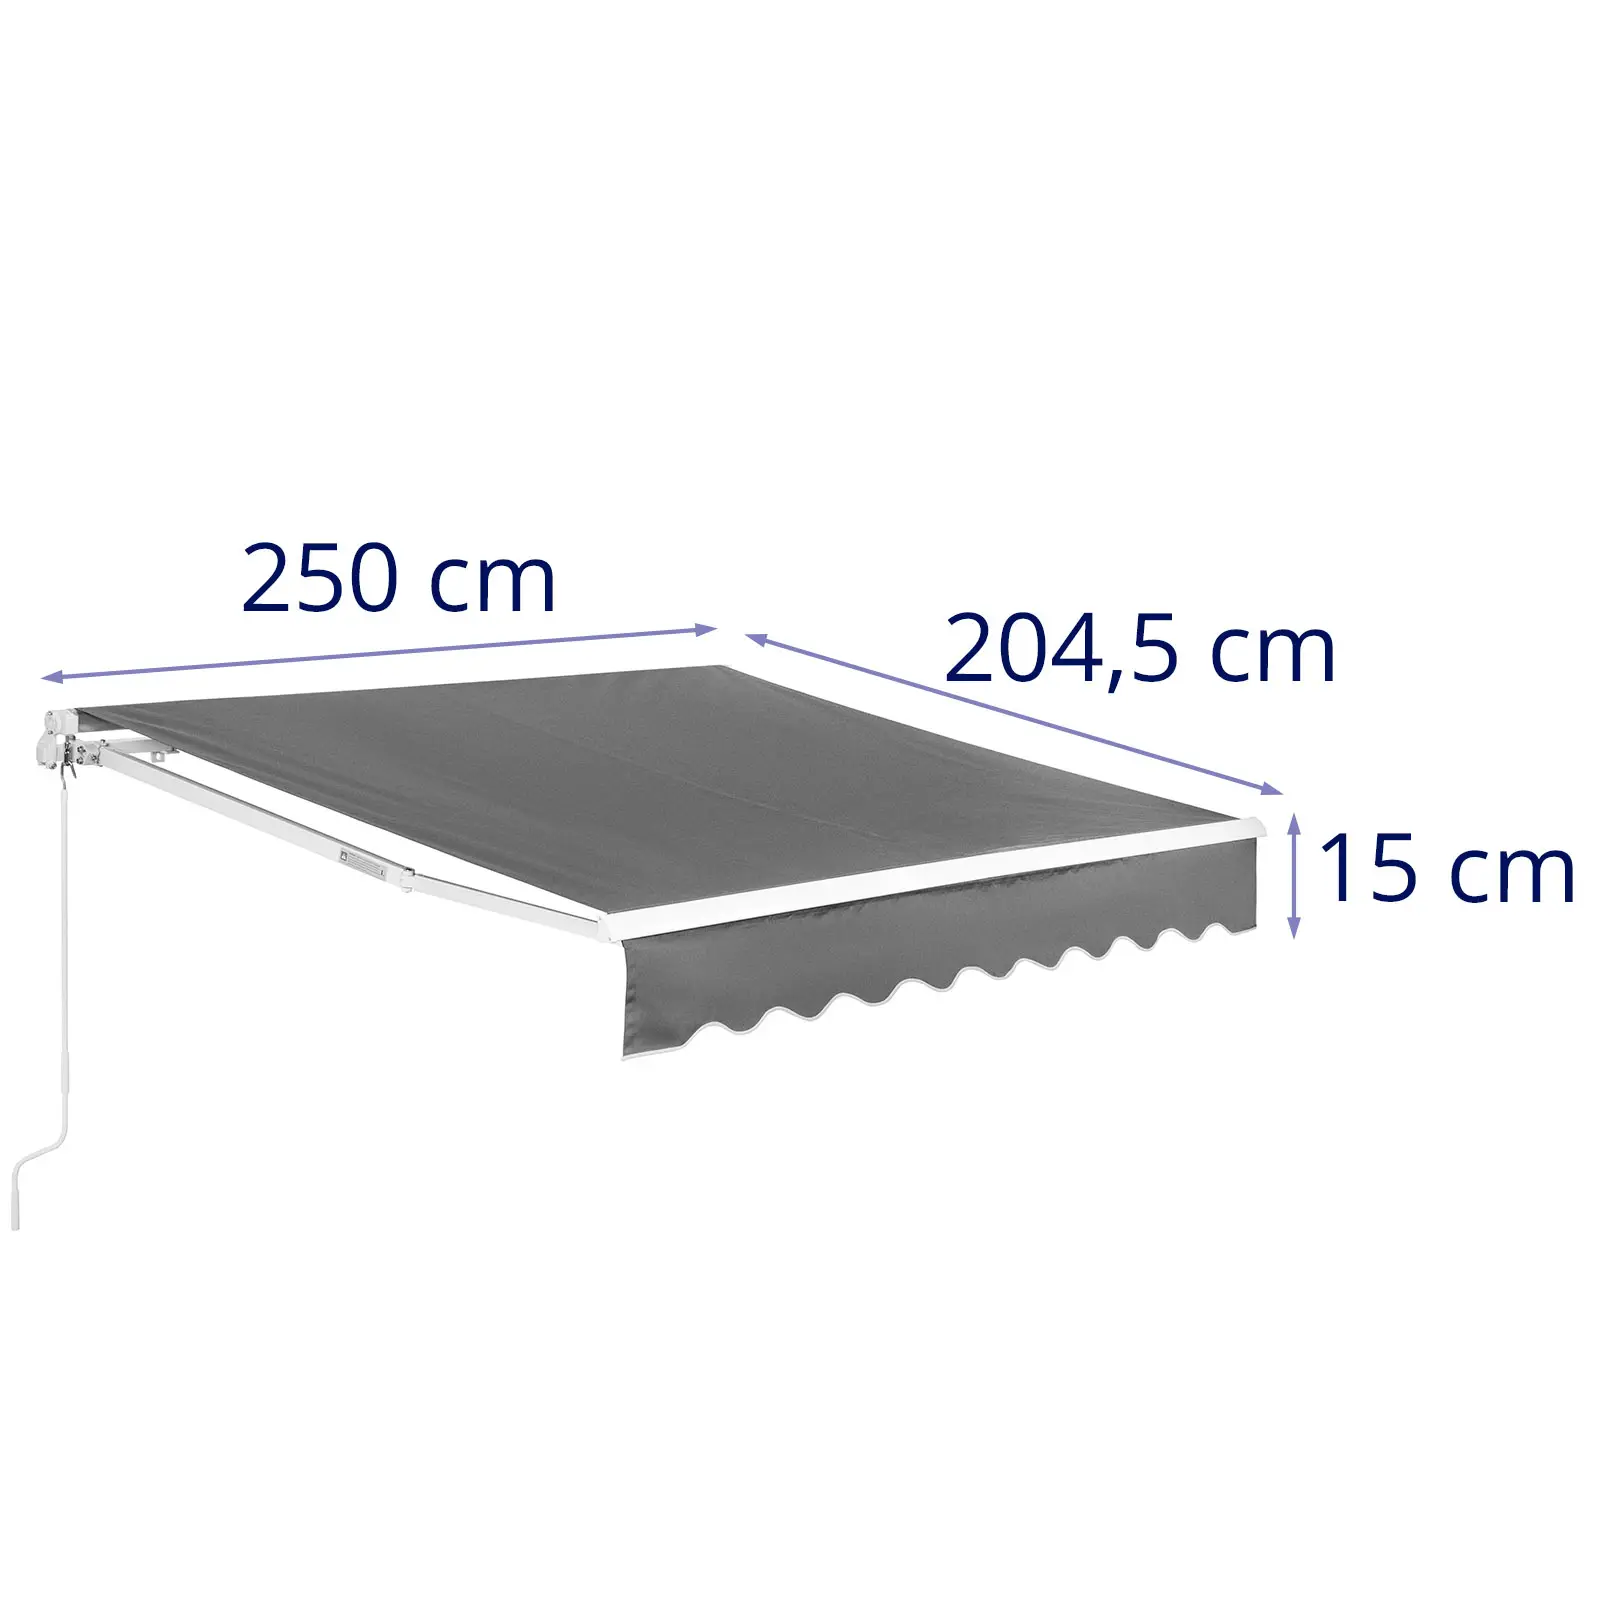 Markise - für Balkon / Terrasse - manuell - 200 x 250 cm - UV-resistent - anthrazitgrau